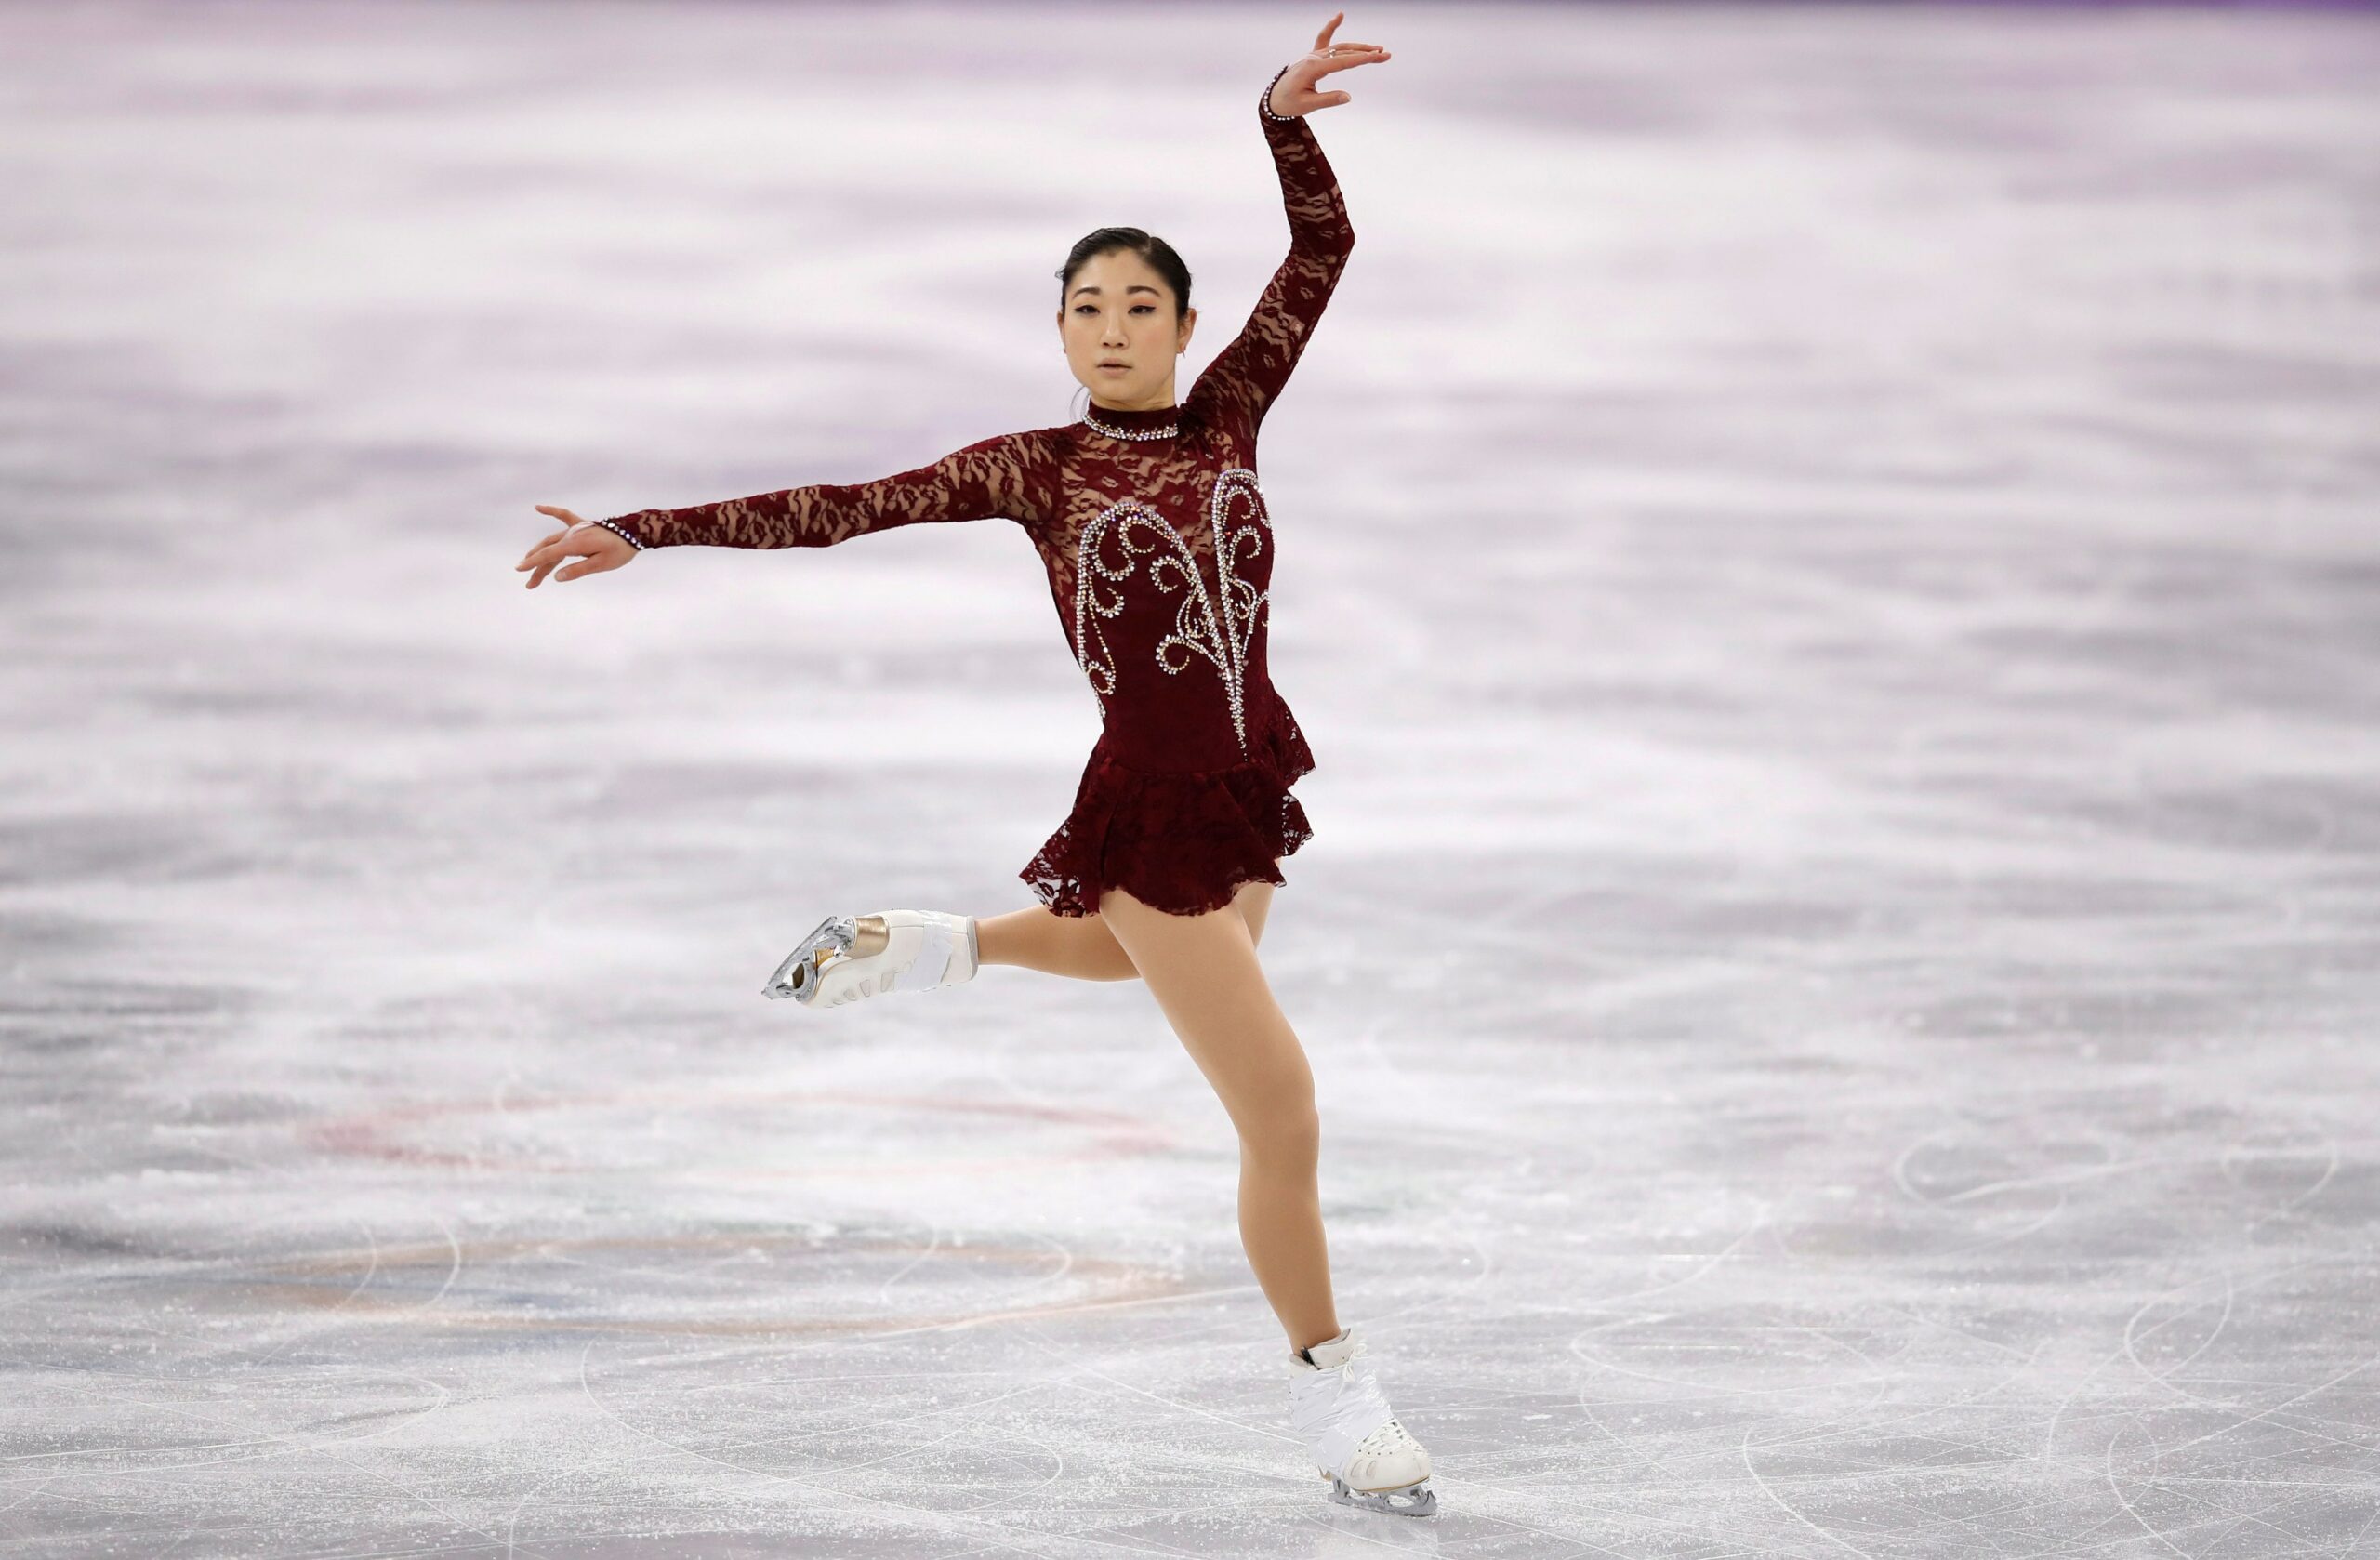 Olympian Mirai Nagasu skating